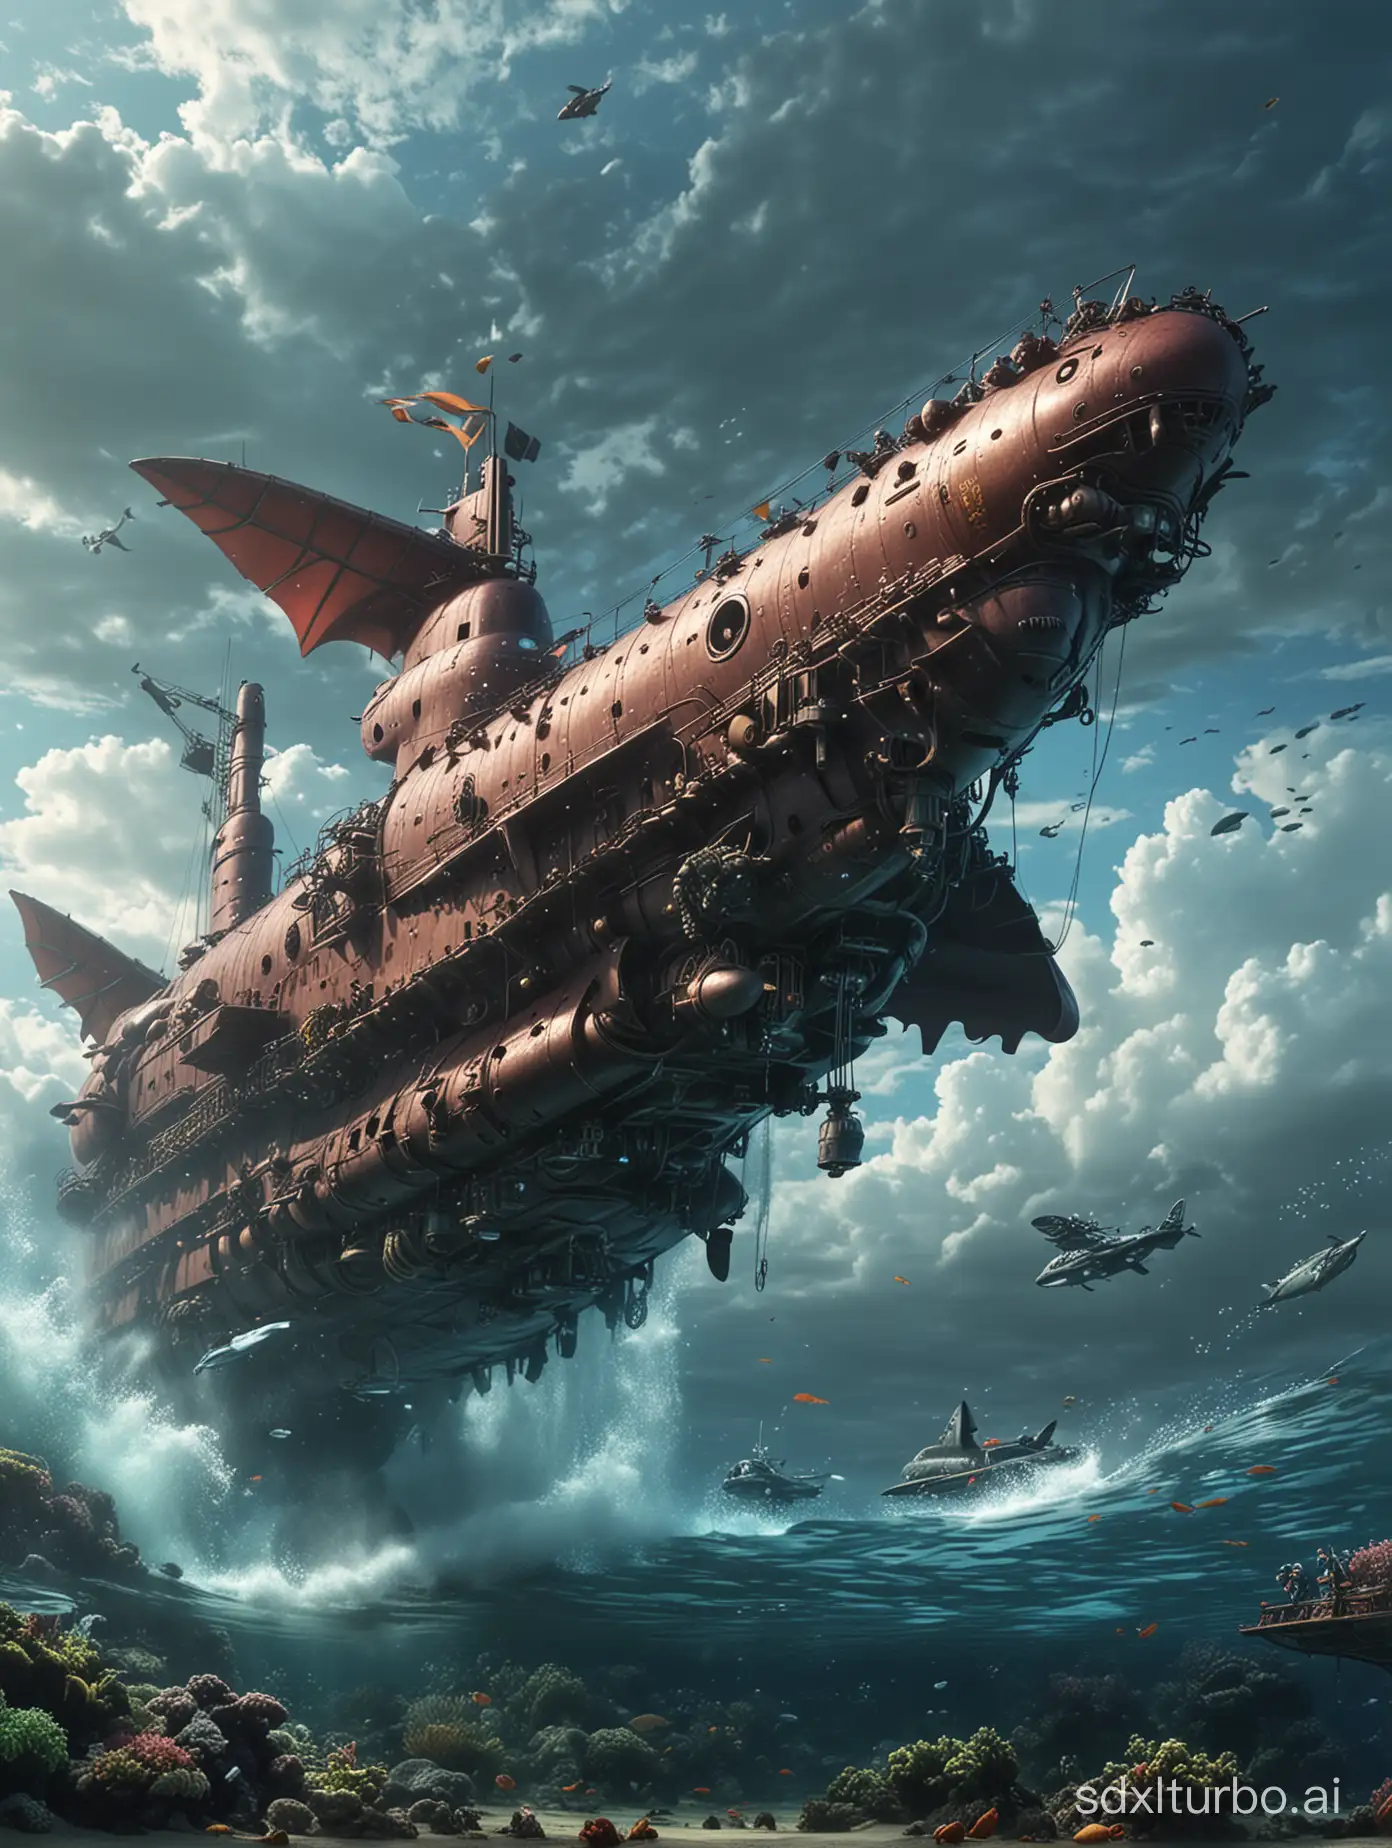 Futuristic-Dragon-Submarine-Underwater-Adventure